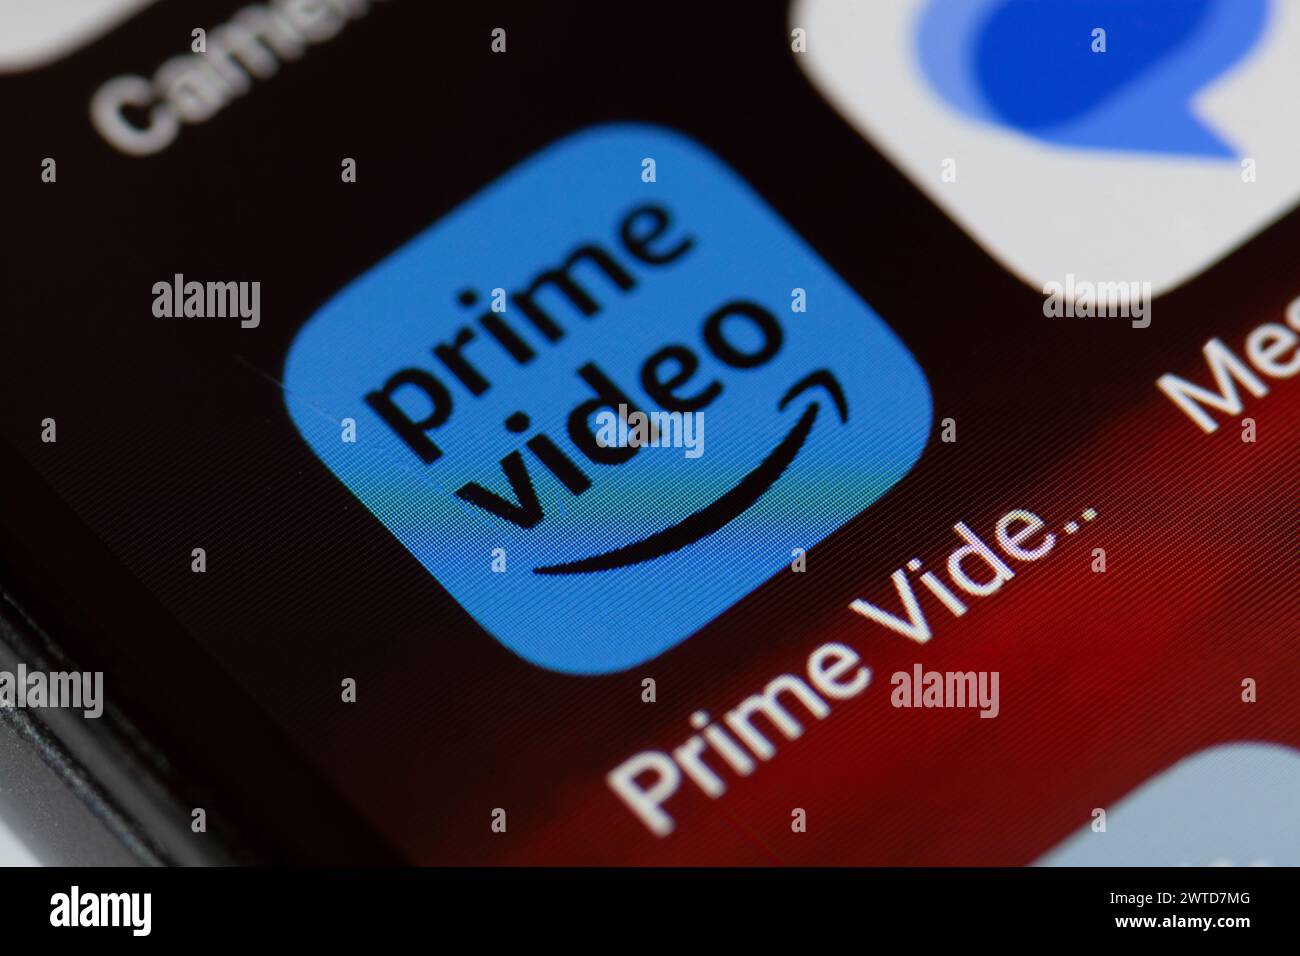 Icona dell'app video Amazon prime sul telefono cellulare Foto Stock